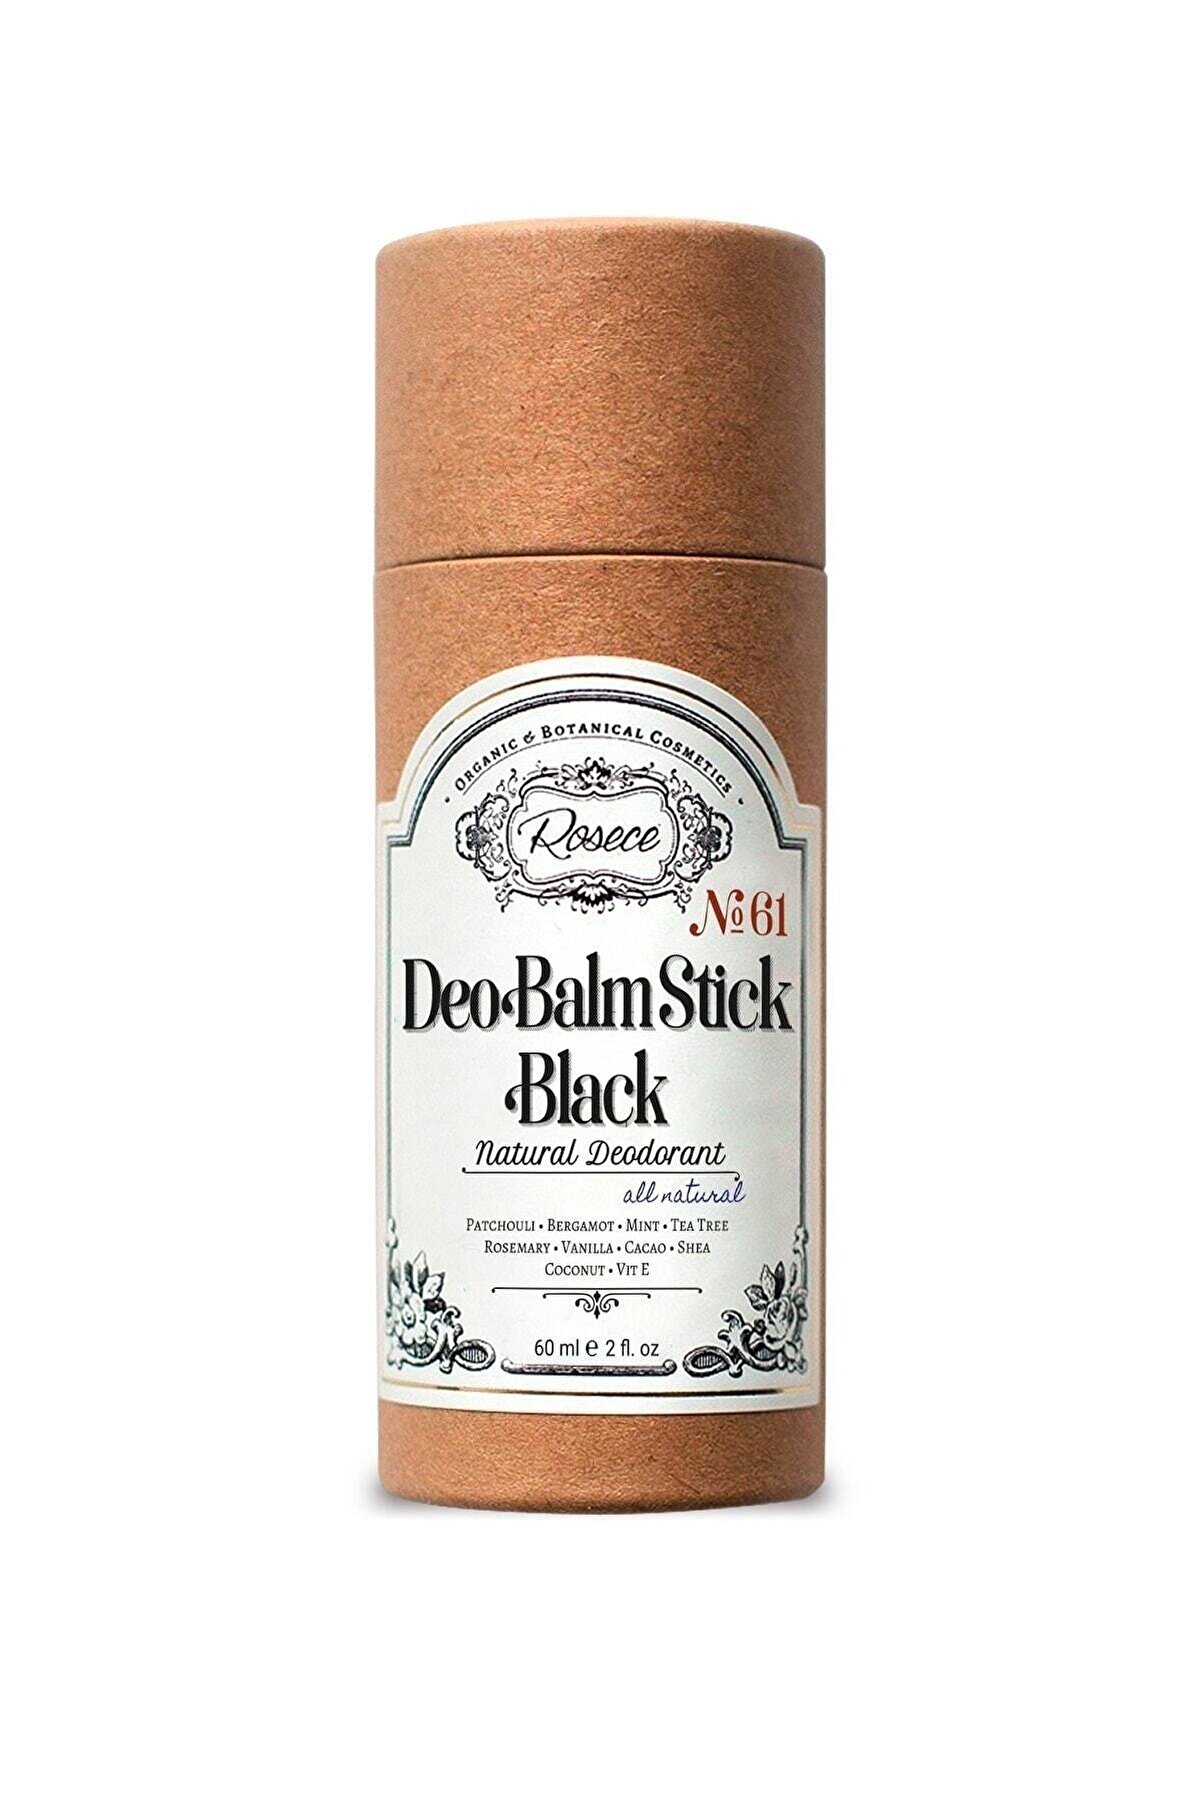 Rosece Naturel Deodorant / Deo Balm Stick / Black (60 Ml)